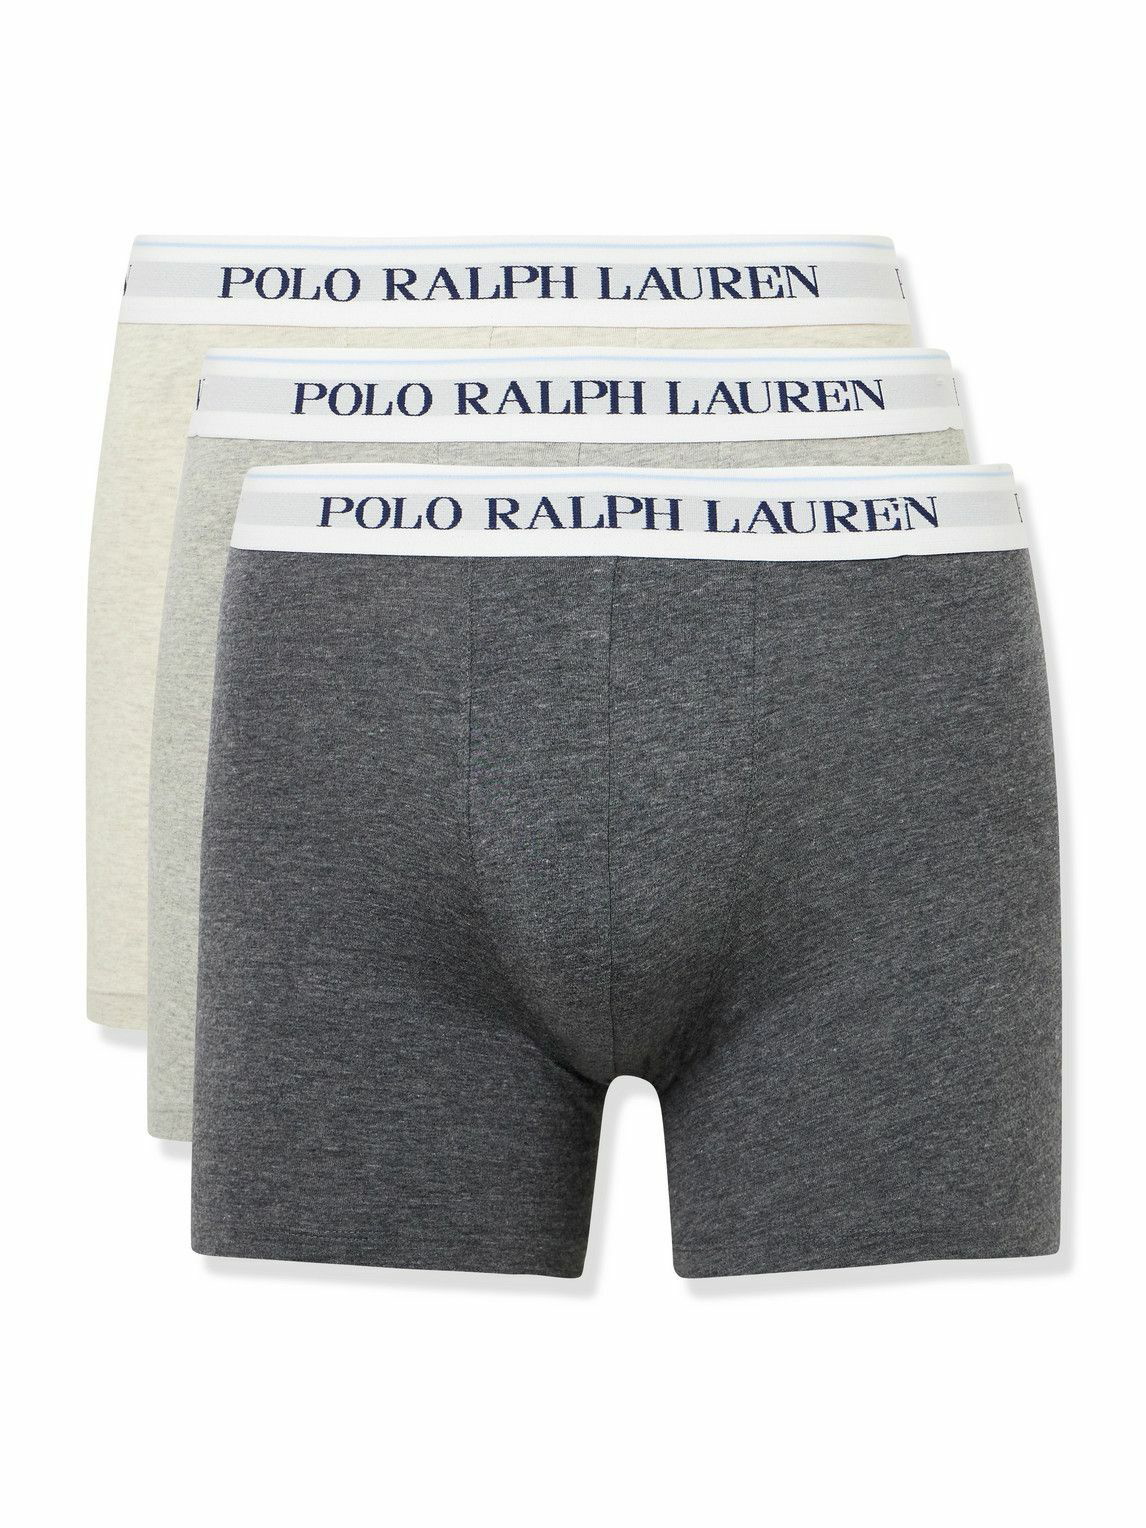 Polo Ralph Lauren Modern Briefs